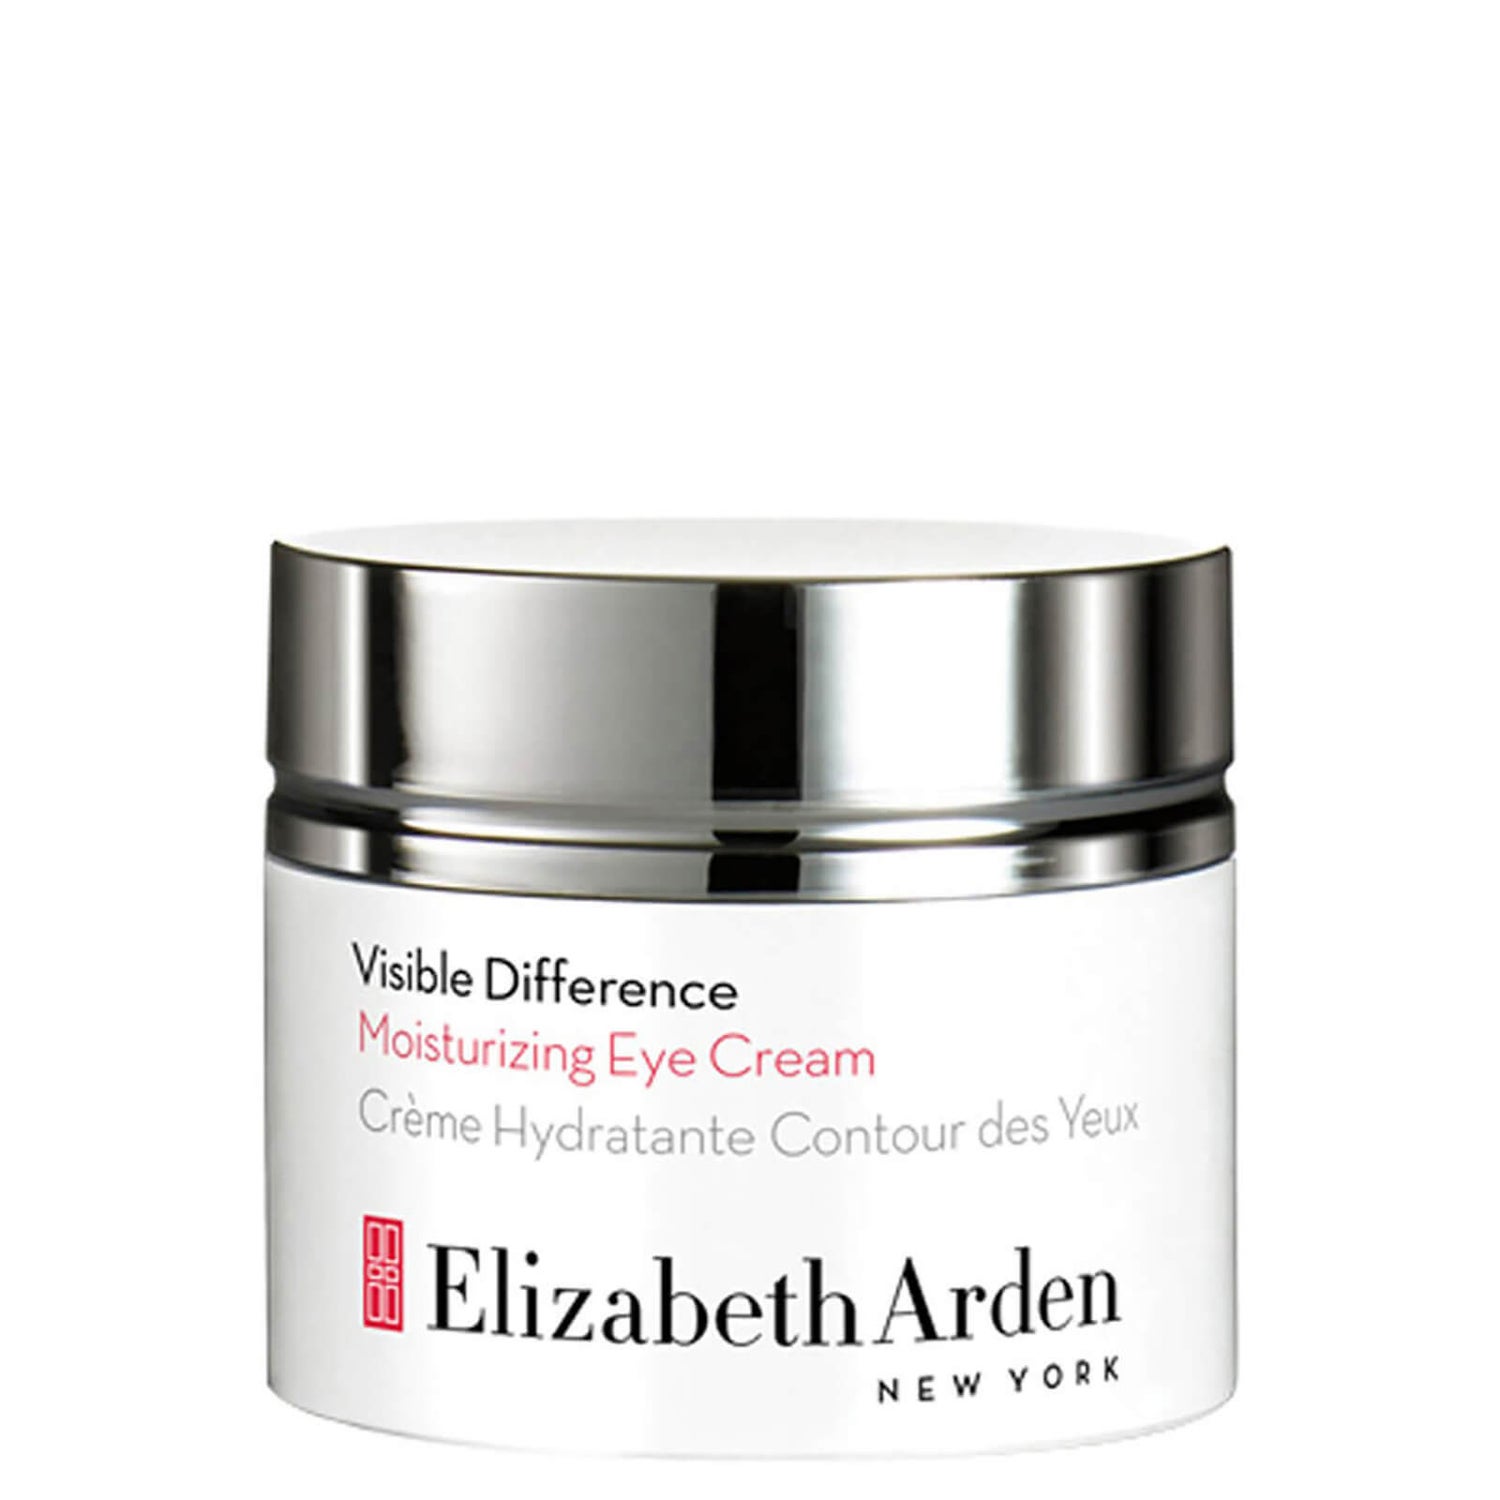 Elizabeth Arden Visible Difference Crème Hydratante Contour des Yeux (15ml)